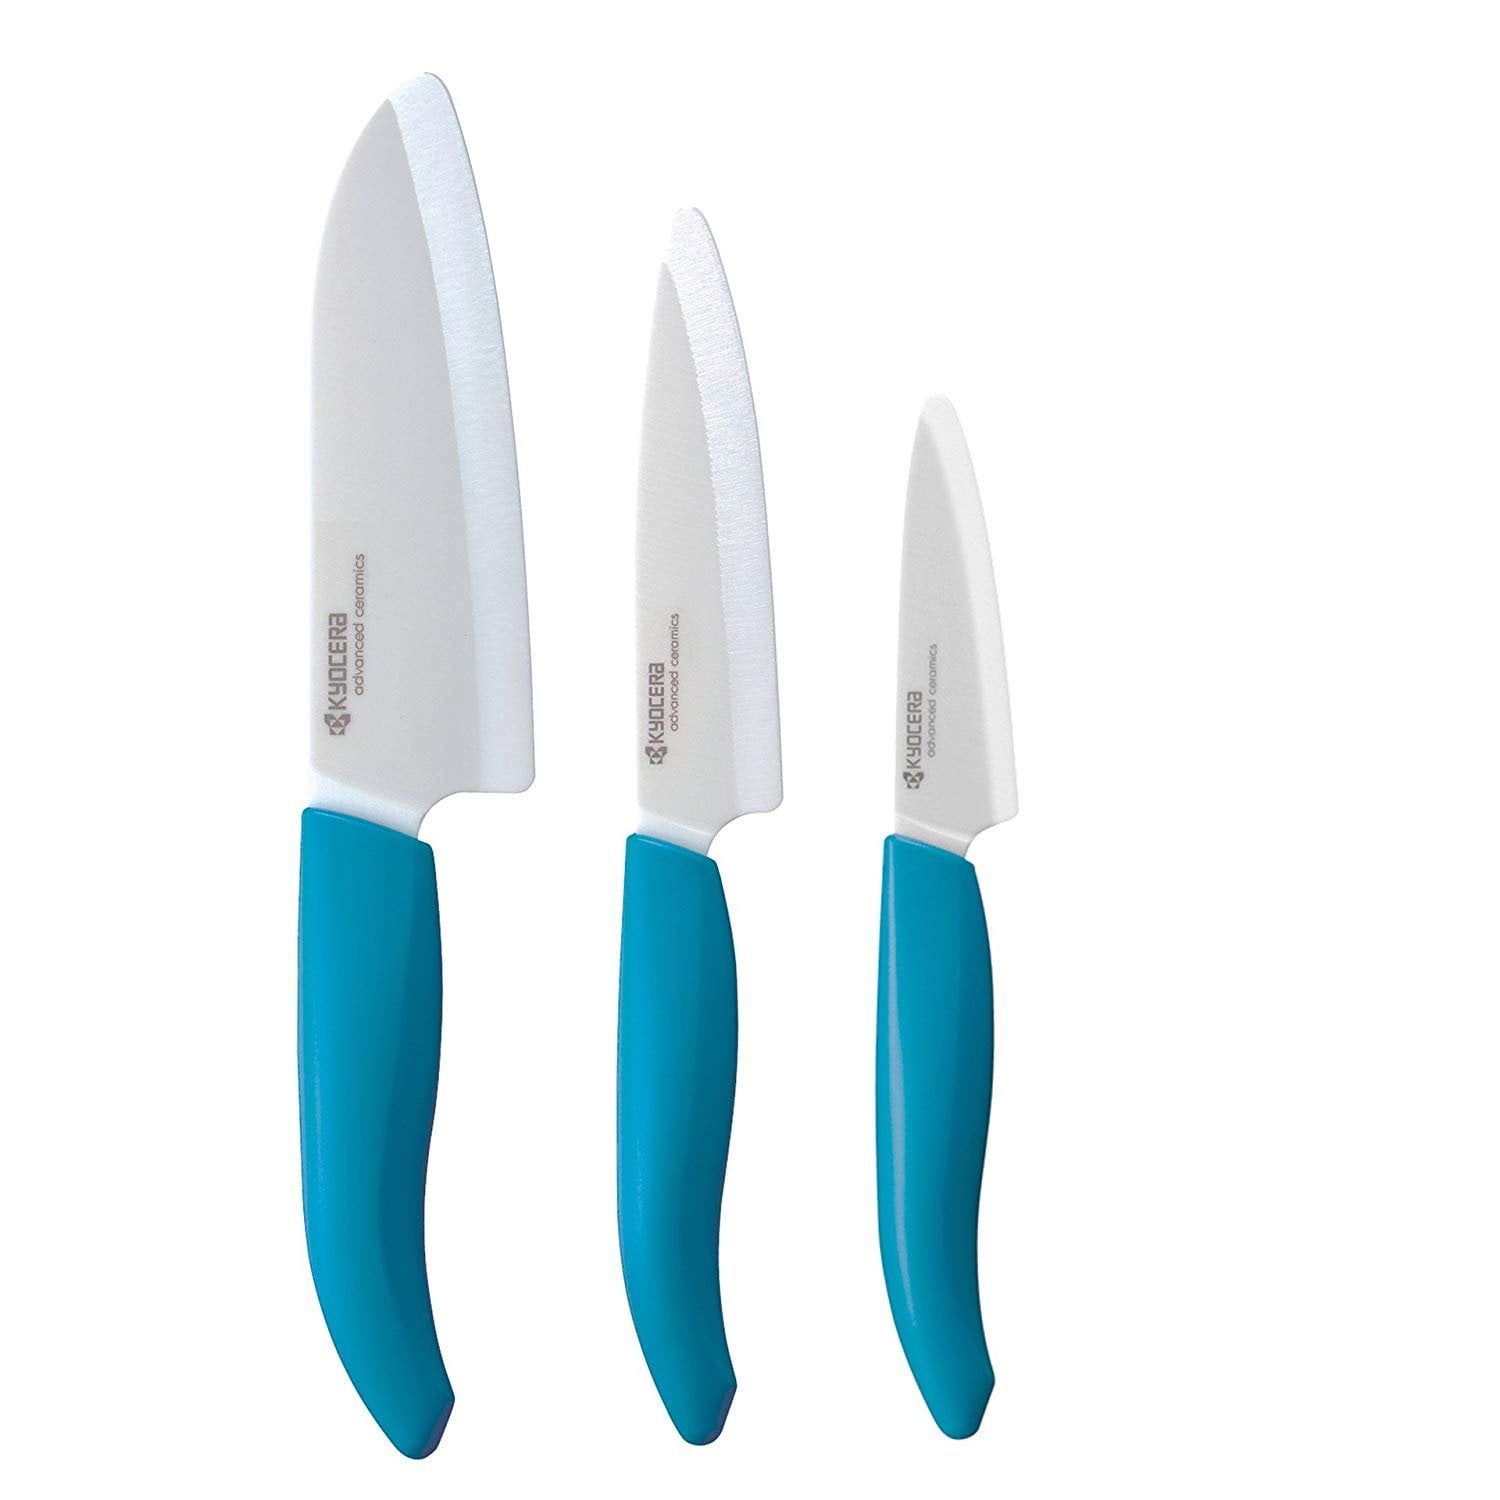 Kyocera 3 Revolution Series Ceramic Paring Knife – Blue